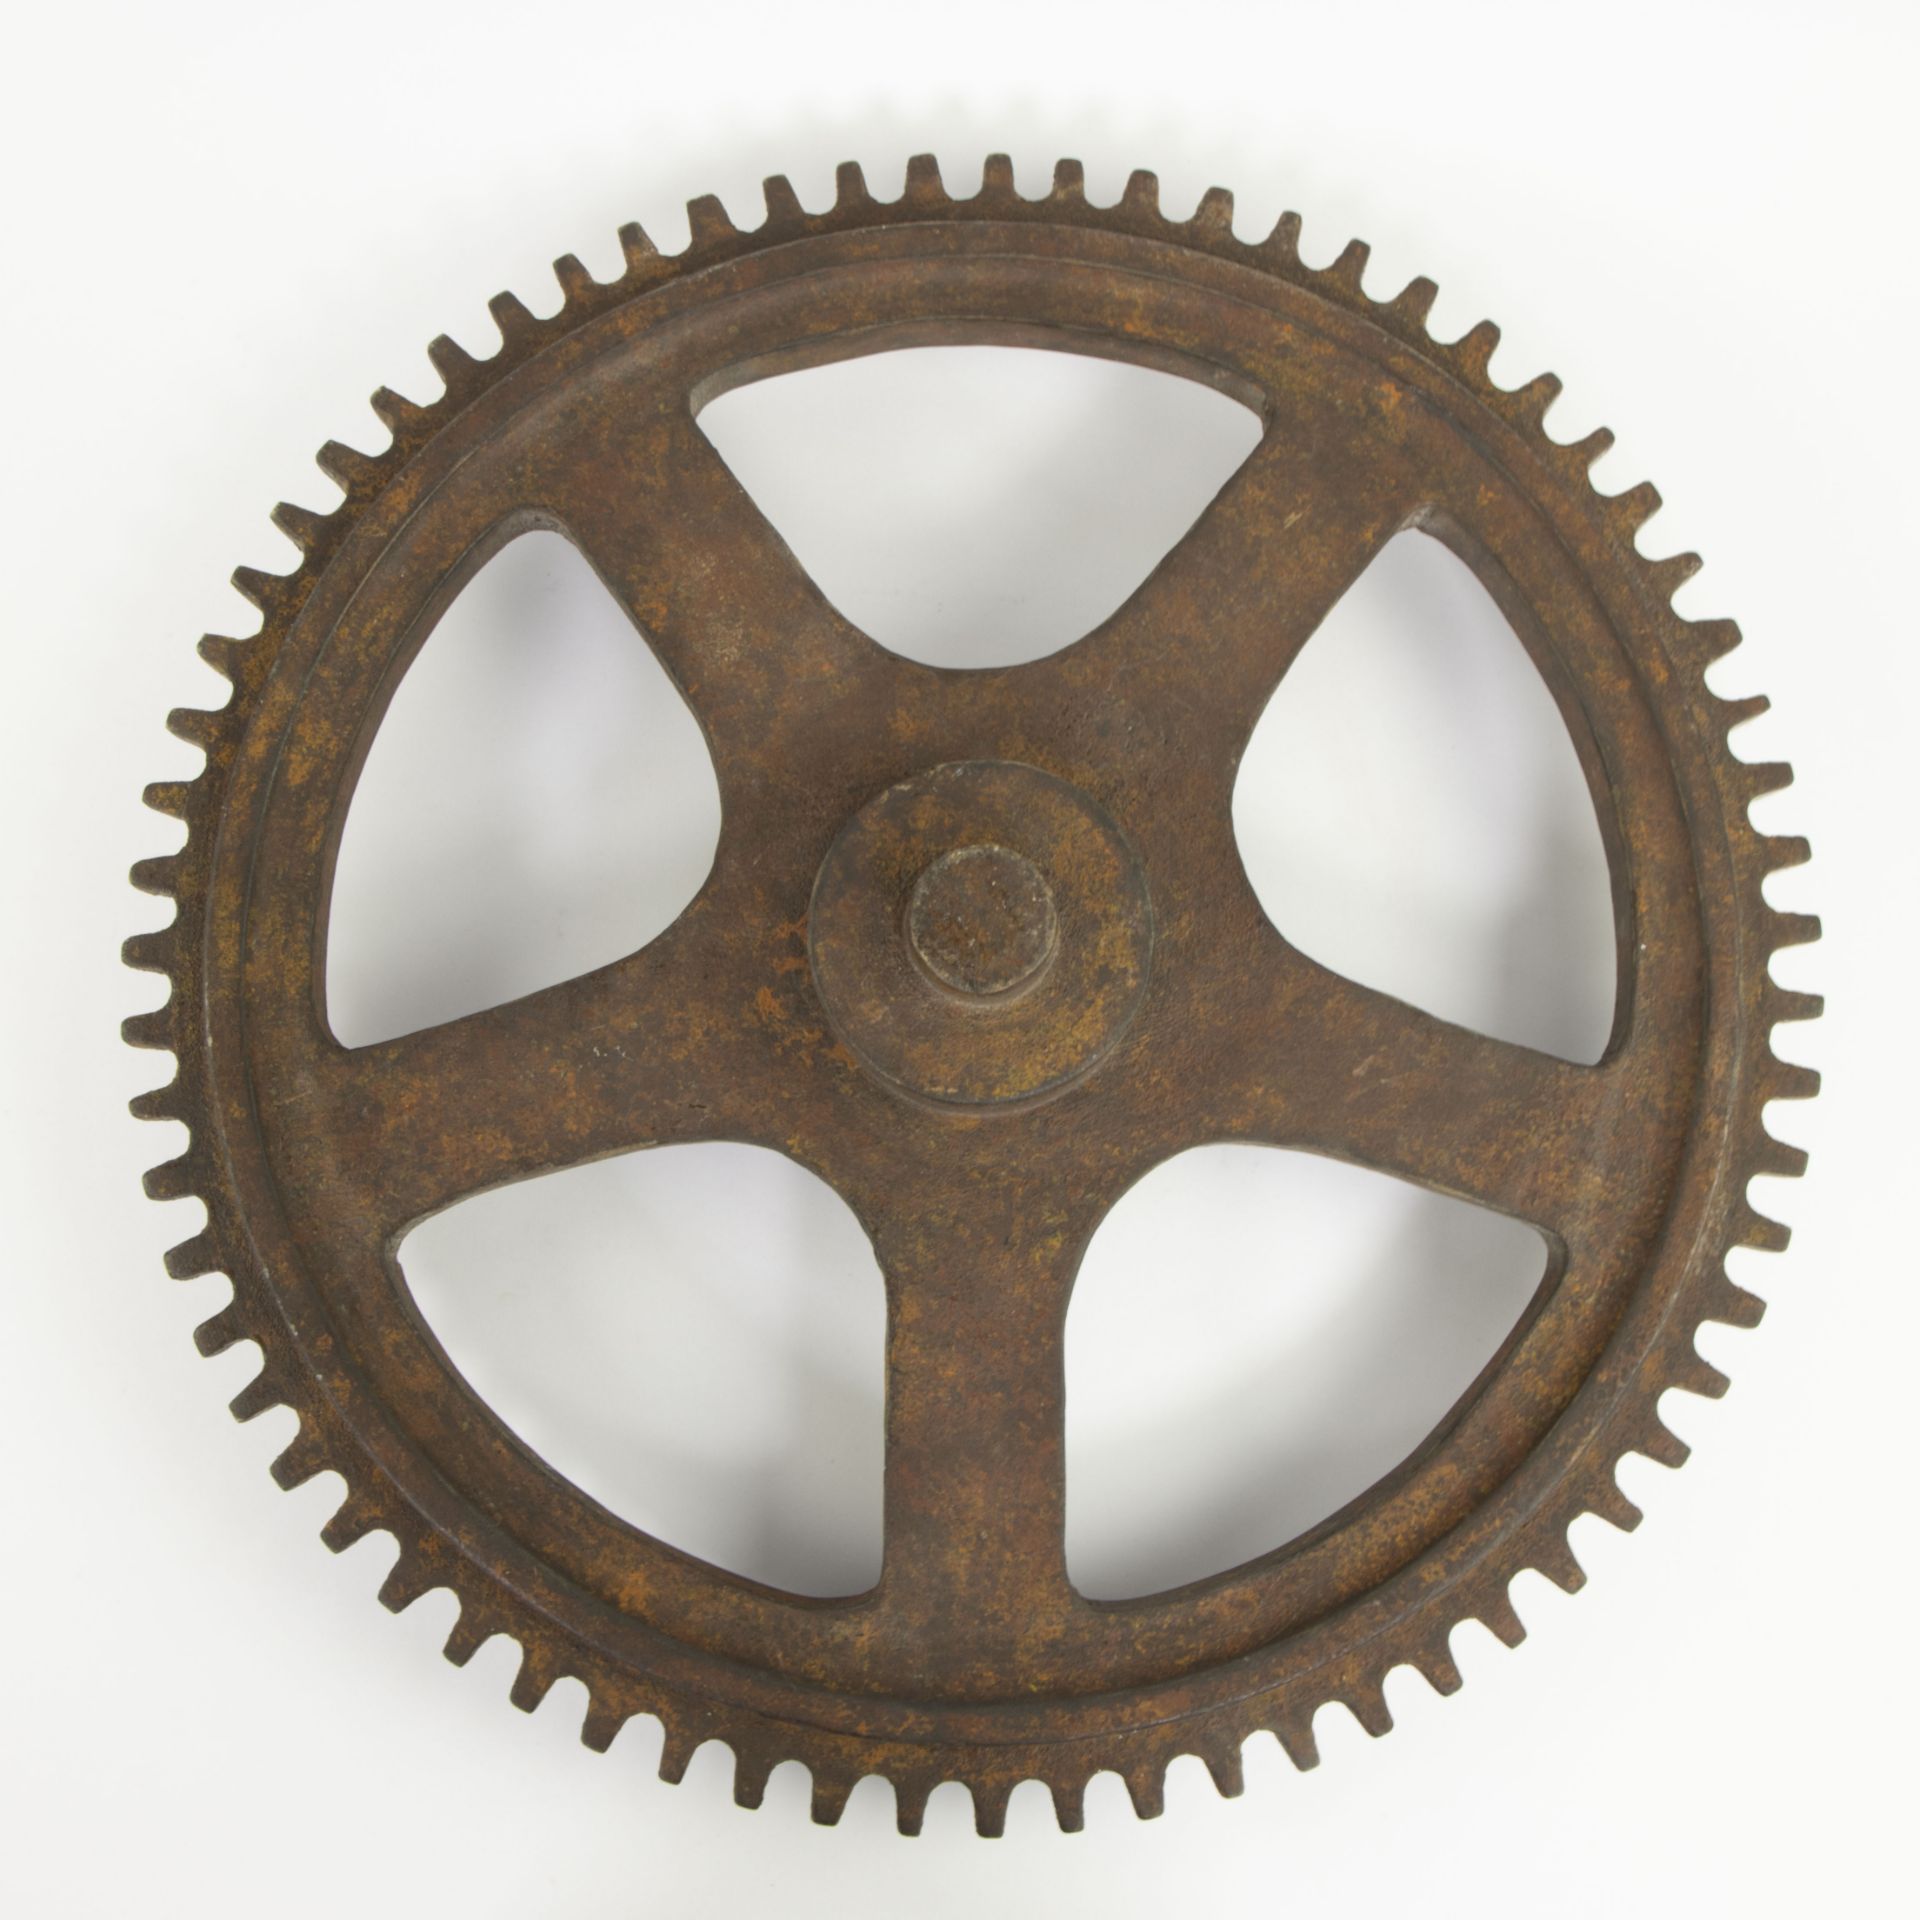 2 vintage wooden gears - Bild 5 aus 5